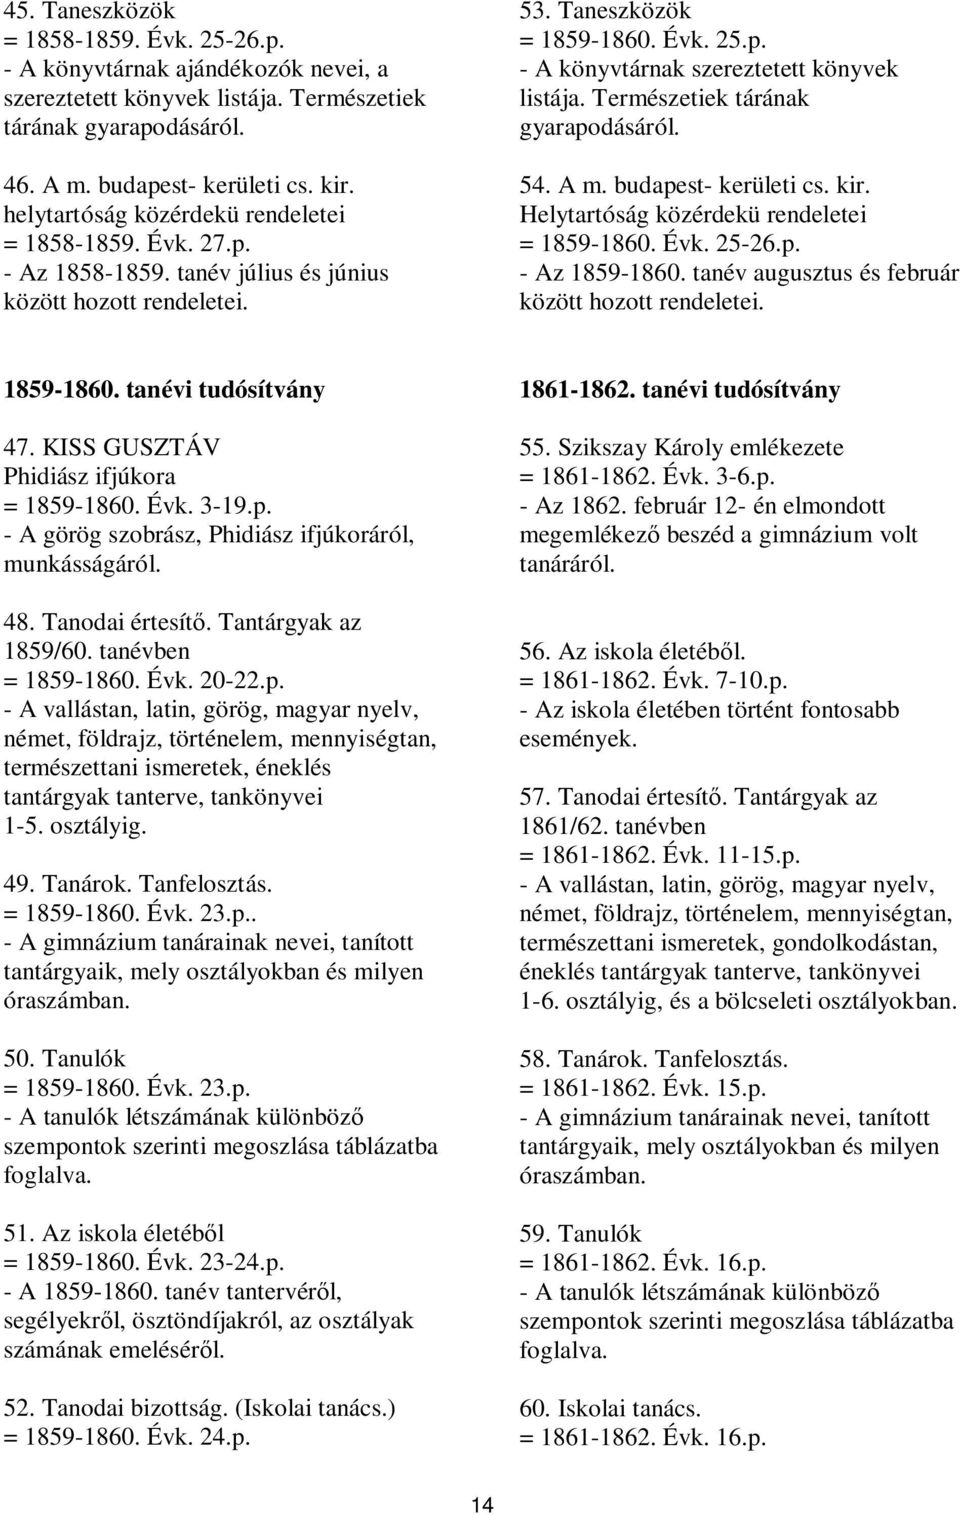 Természetiek tárának gyarapodásáról. 54. A m. budapest- kerületi cs. kir. Helytartóság közérdekü rendeletei = 1859-1860. Évk. 25-26.p. - Az 1859-1860.